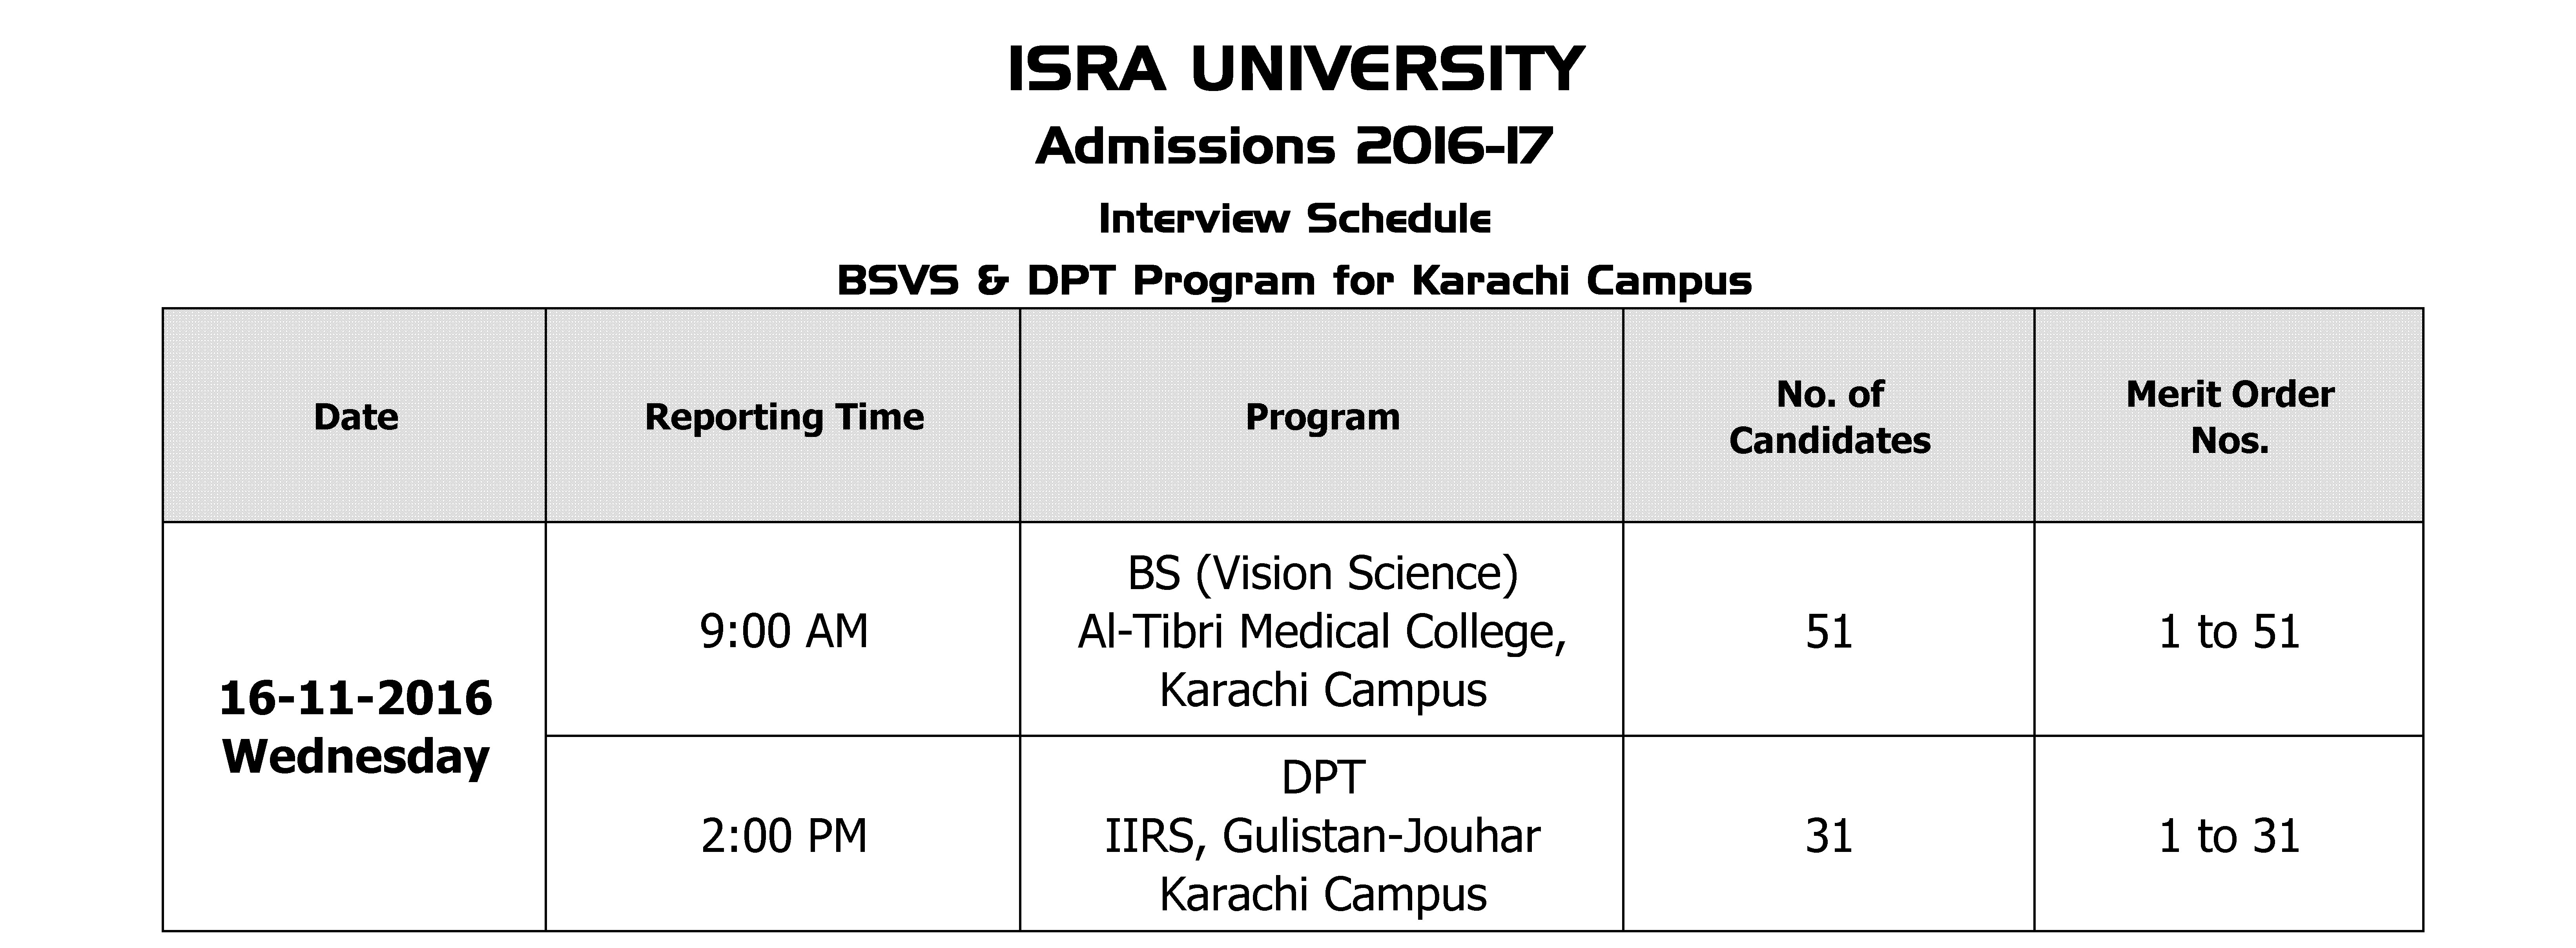 interview-schedule-bsvs-dpt-karachi-campus